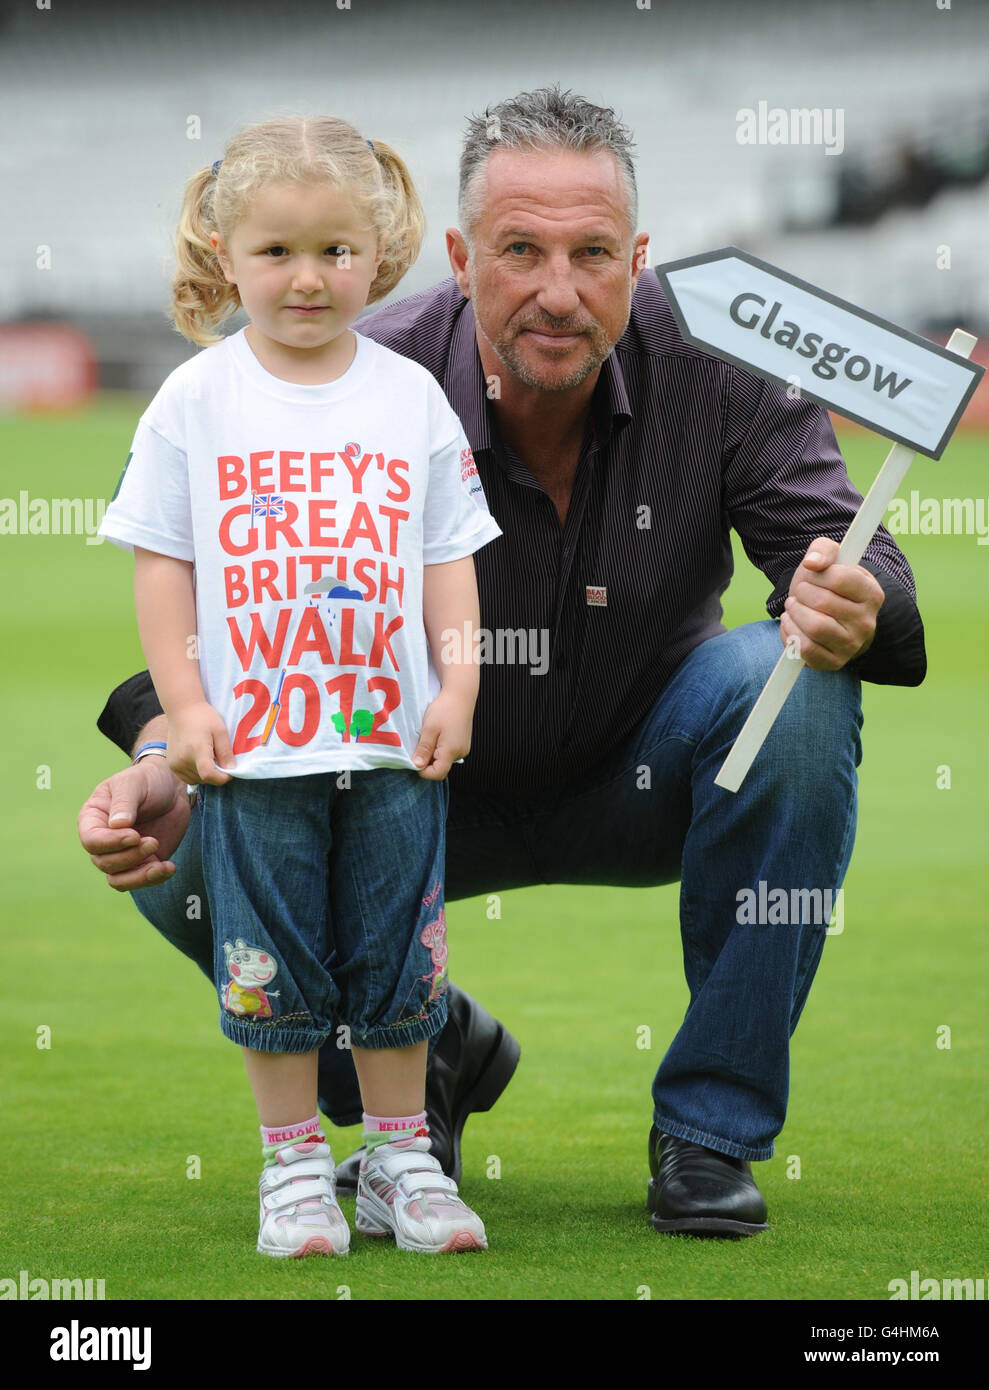 Rebecca Foley, âgée de quatre ans, de Glasgow, qui se joindra à Sir Ian Botham à une étape de sa marche caritative en Grande-Bretagne pour aider à traiter les cancers du sang de l'enfant, au terrain de cricket de Lord's, à Londres. Banque D'Images